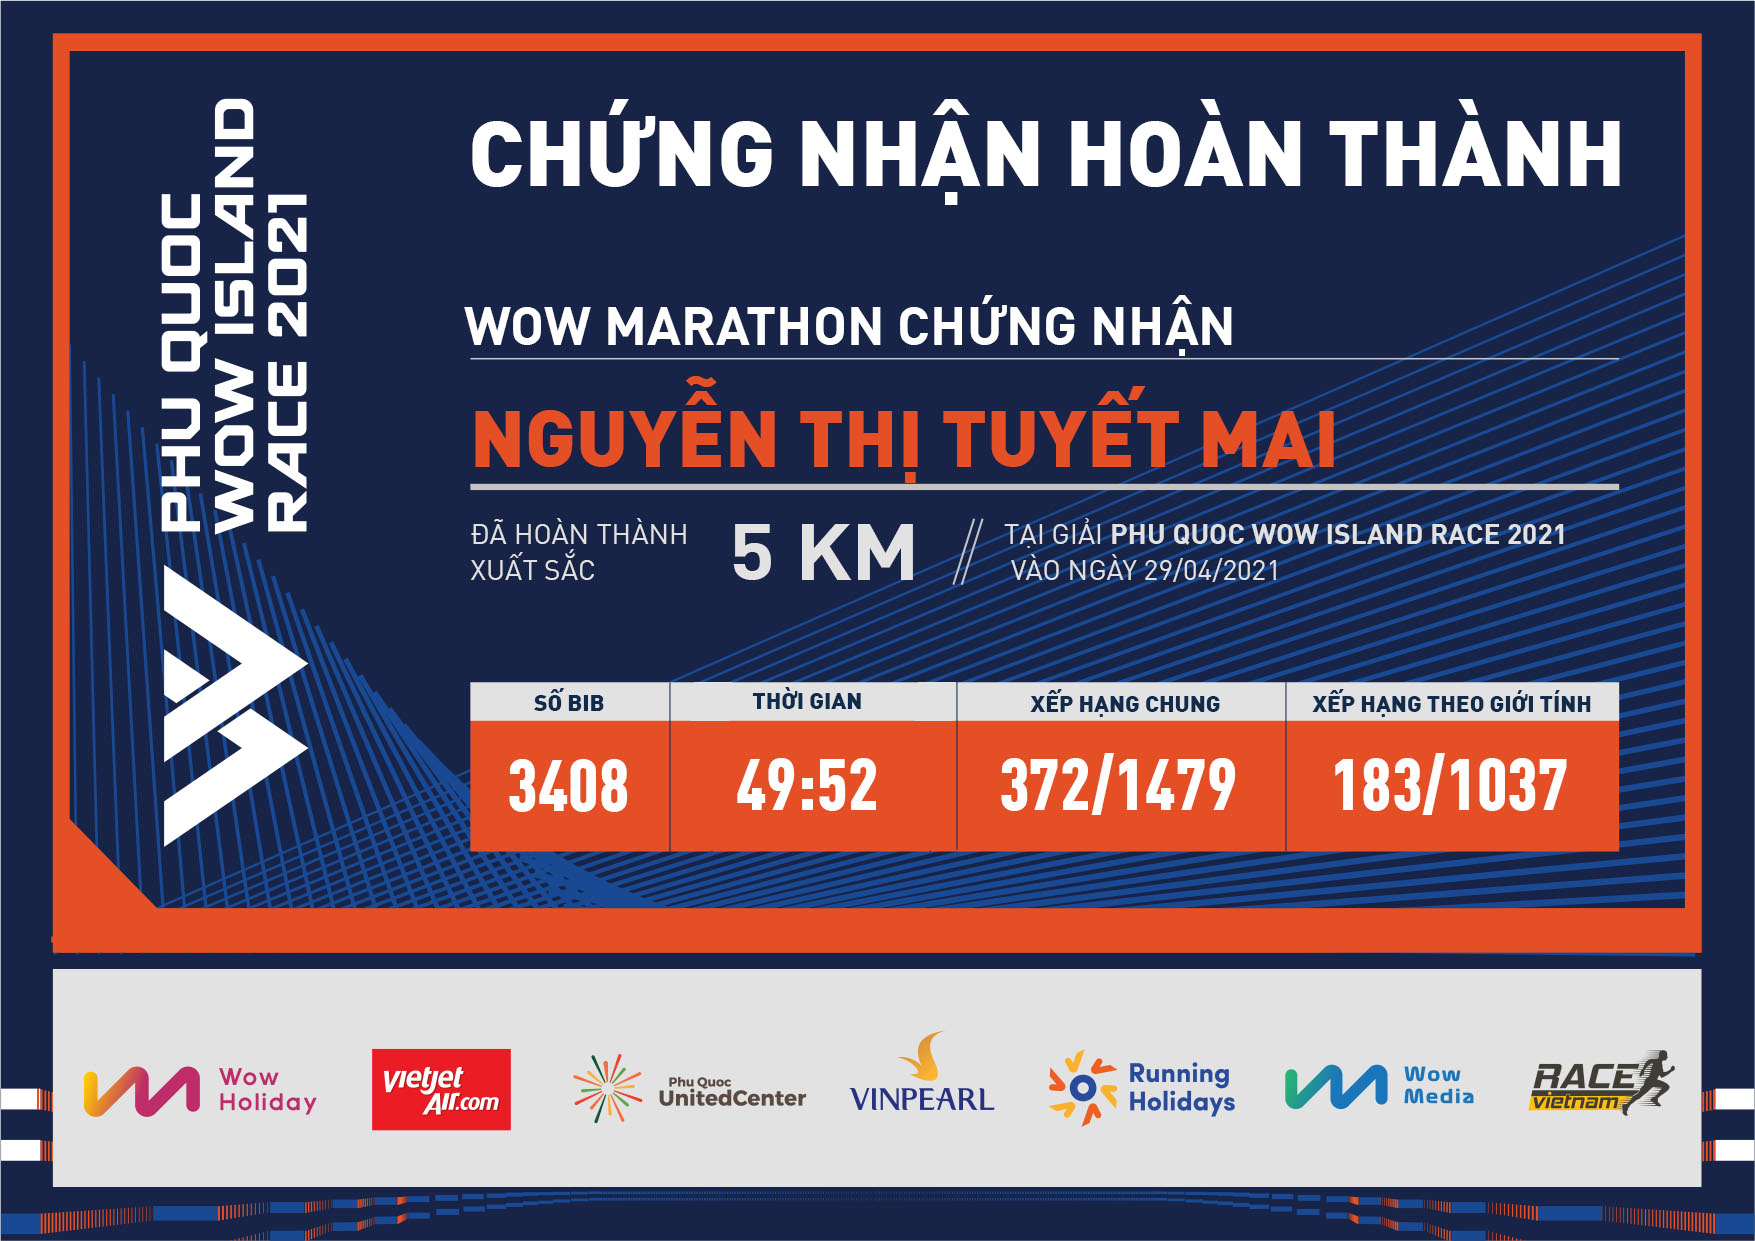 3408 - Nguyễn Thị Tuyết Mai